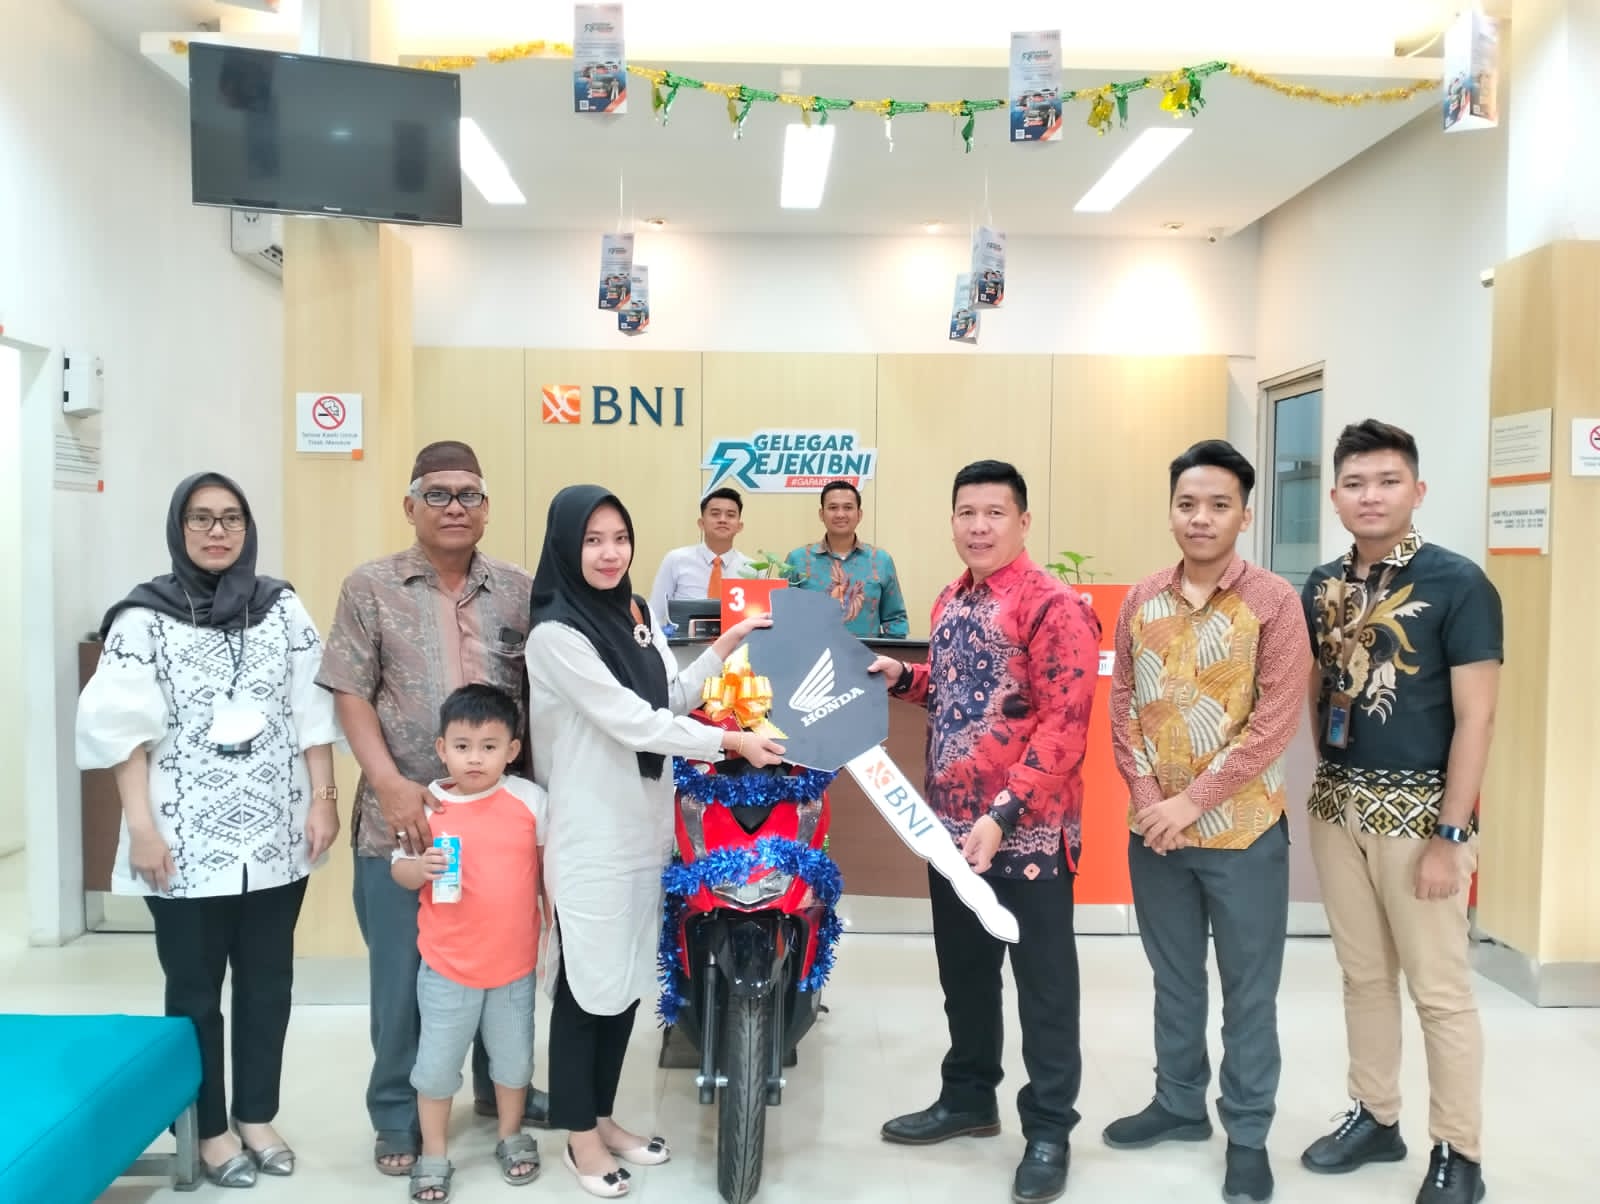 Pemenang Undian Gelegar Rezeki BNI 'GaPakeNanti', Rosmalita Warga SP Padang OKI Bawa Pulang Sepeda Motor